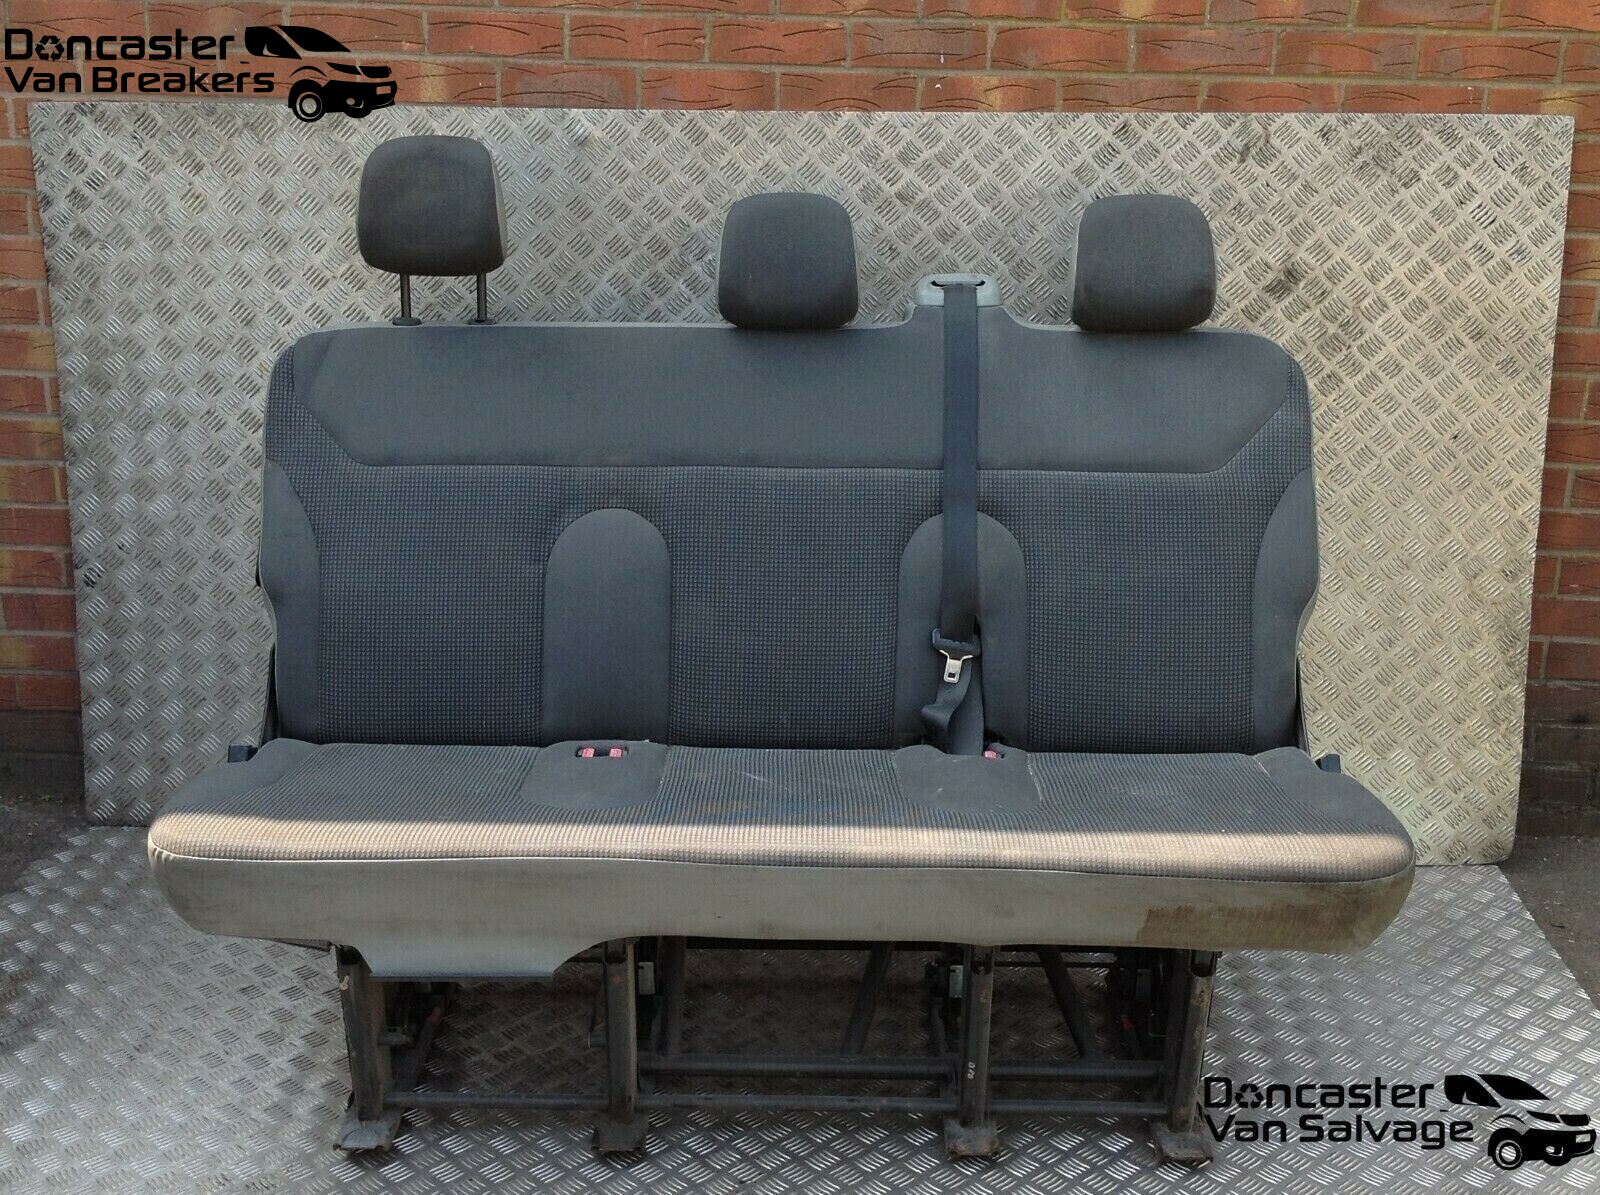 FORD TRANSIT MK7 REAR SEAT CONVERSION / TRIPLE SEAT